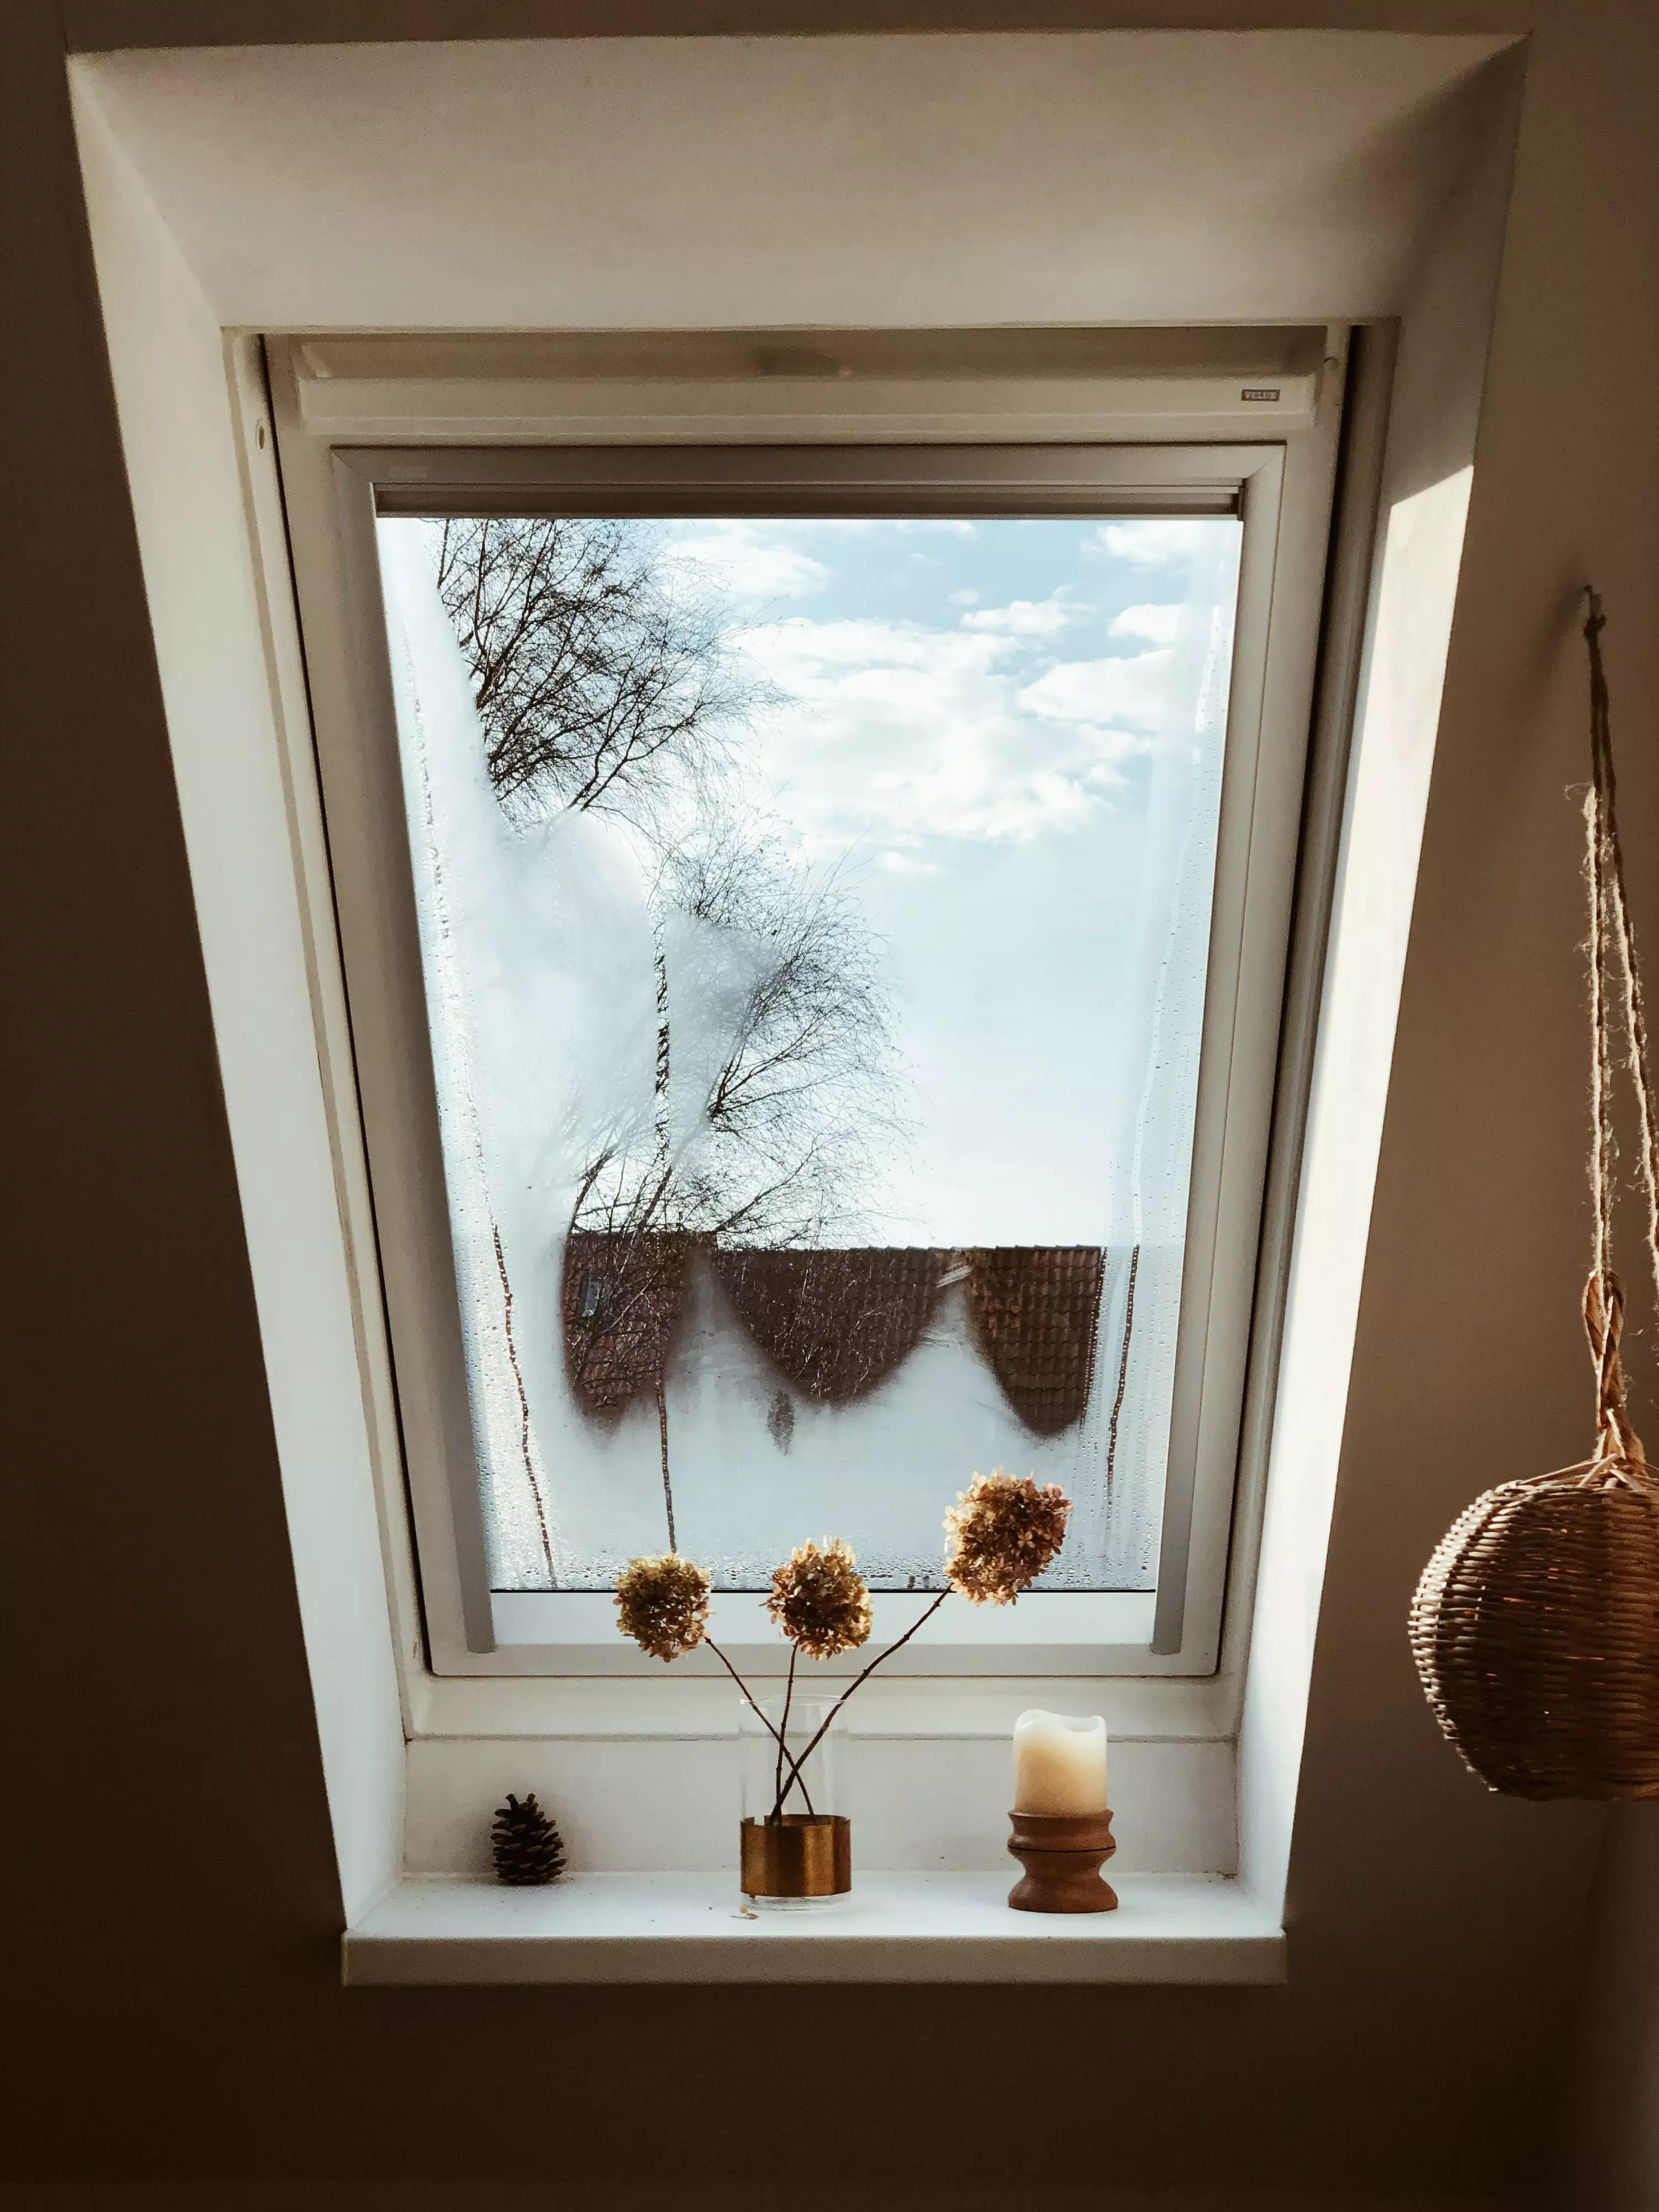 Fenêtre VELUX dans le comble avec des objets décoratifs sur le rebord, montrant le ciel et les arbres.